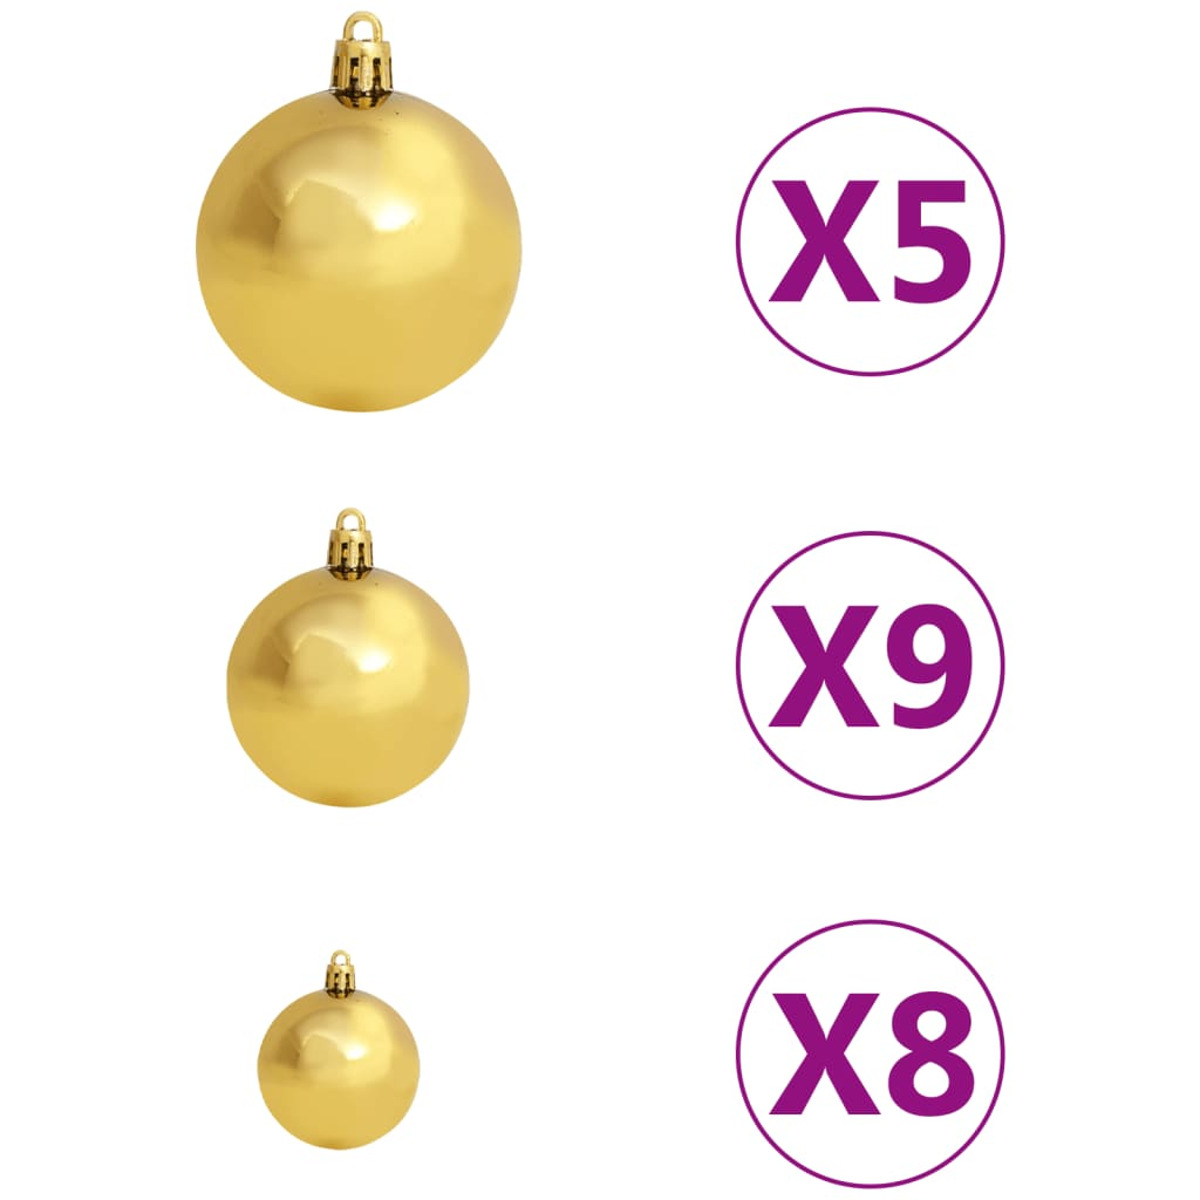 Weihnachtsbaum VIDAXL 3077559